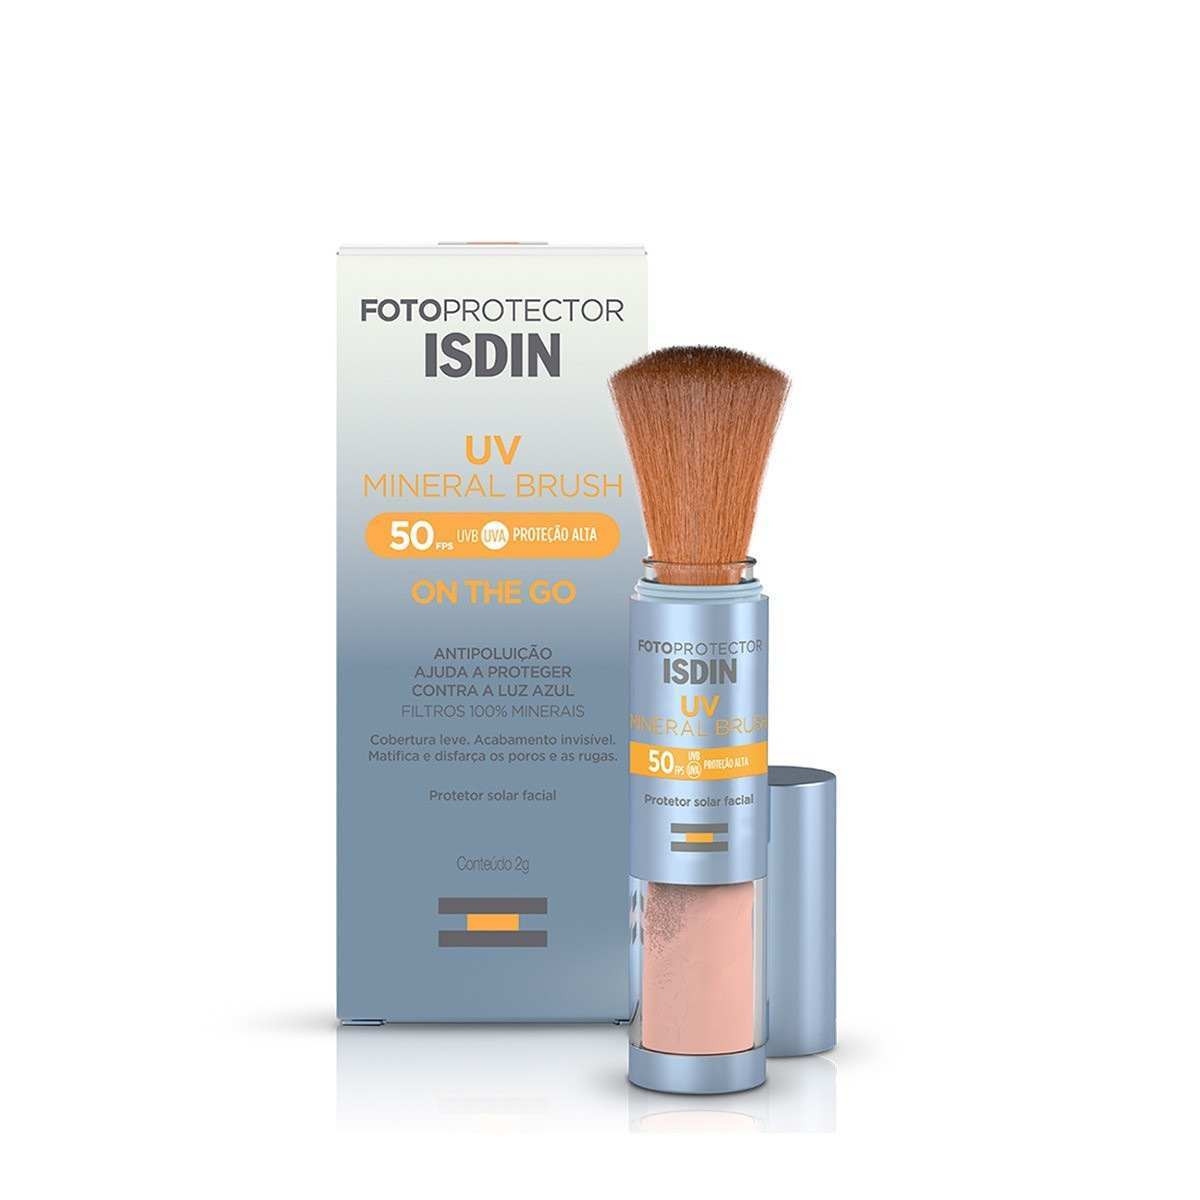 UV Mineral Brush FPS 50 , da ISDIN  R$ 139,90